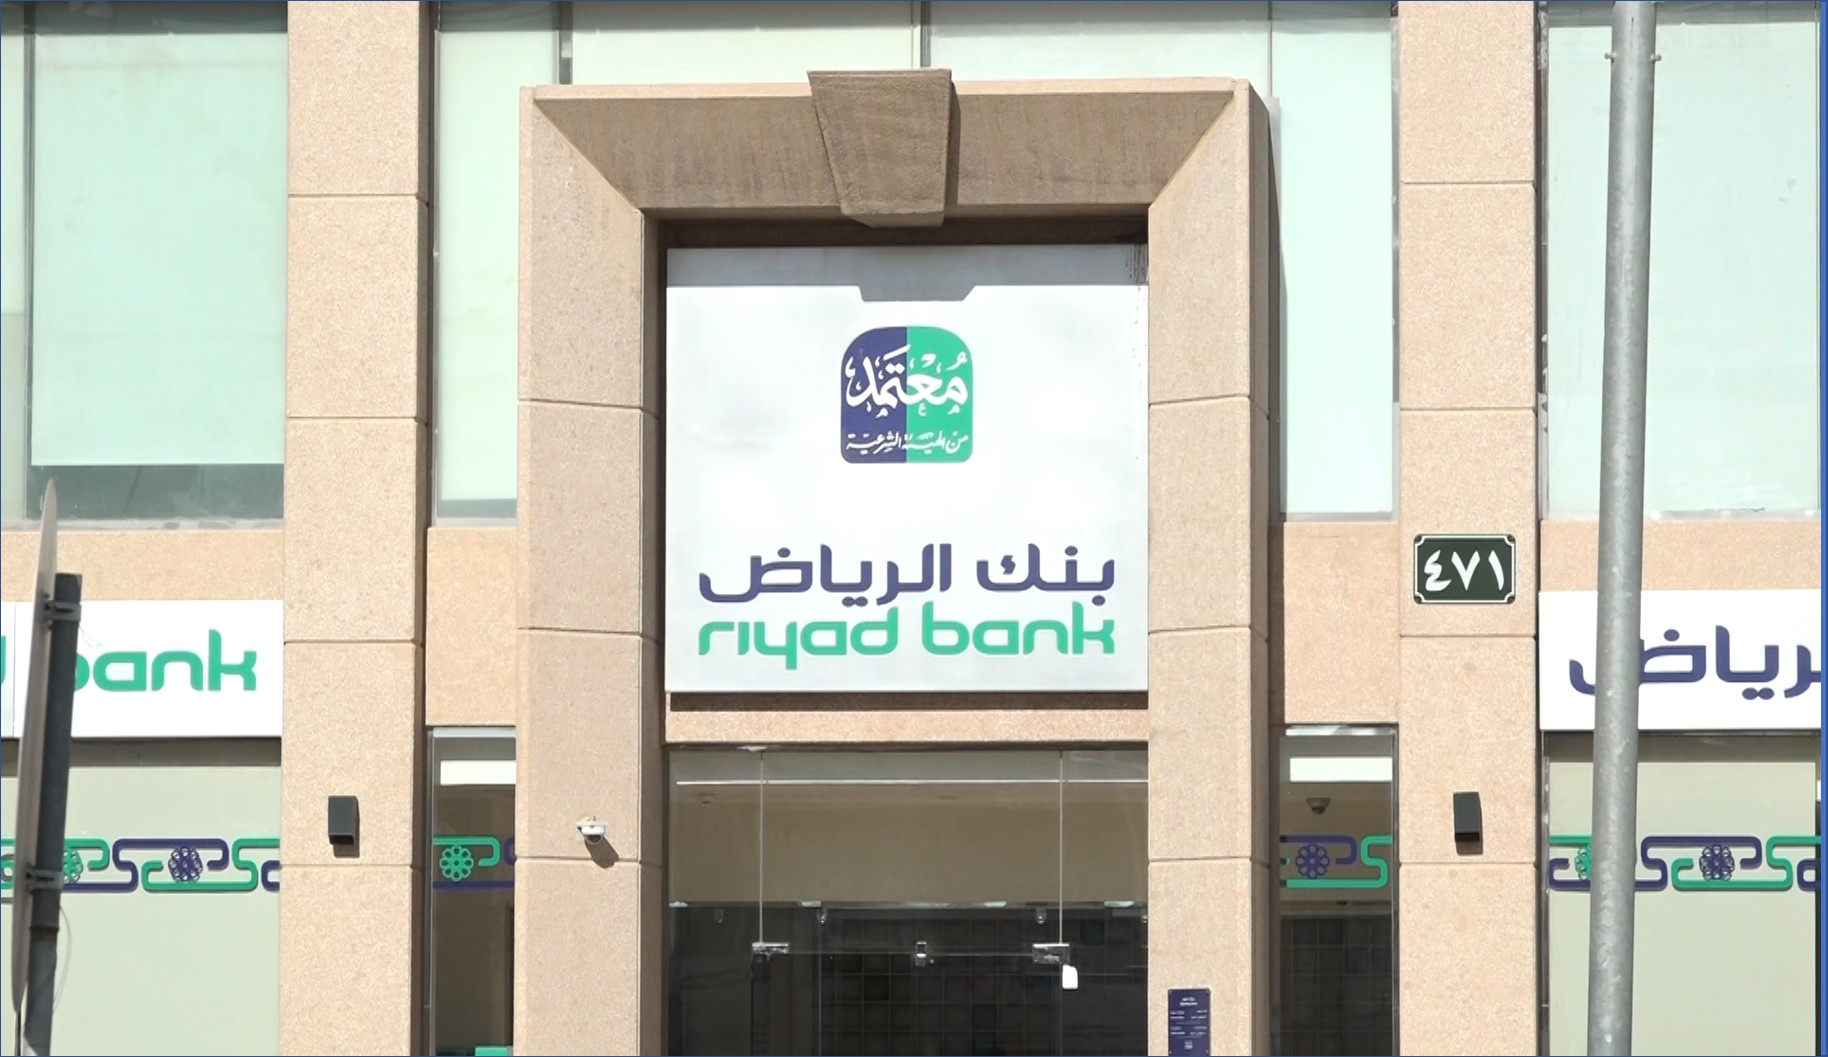 بنك الرياض يعلن عن إقدام لتوظيف ذوي الإعاقة الرجال والنساء